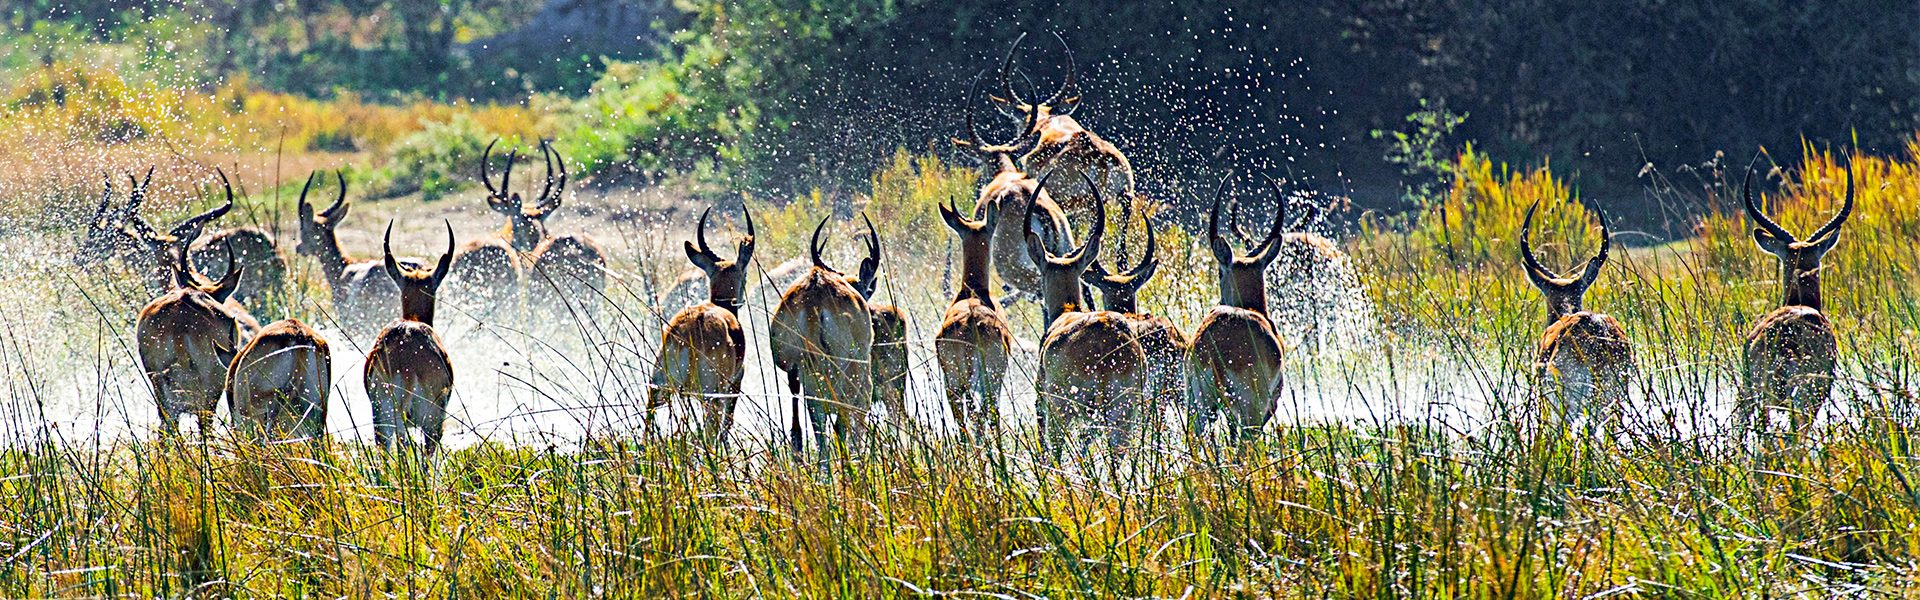 Springbcke in Sicht auf einer Safari in Botswana |  Peter Pack, PackSafari / Chamleon